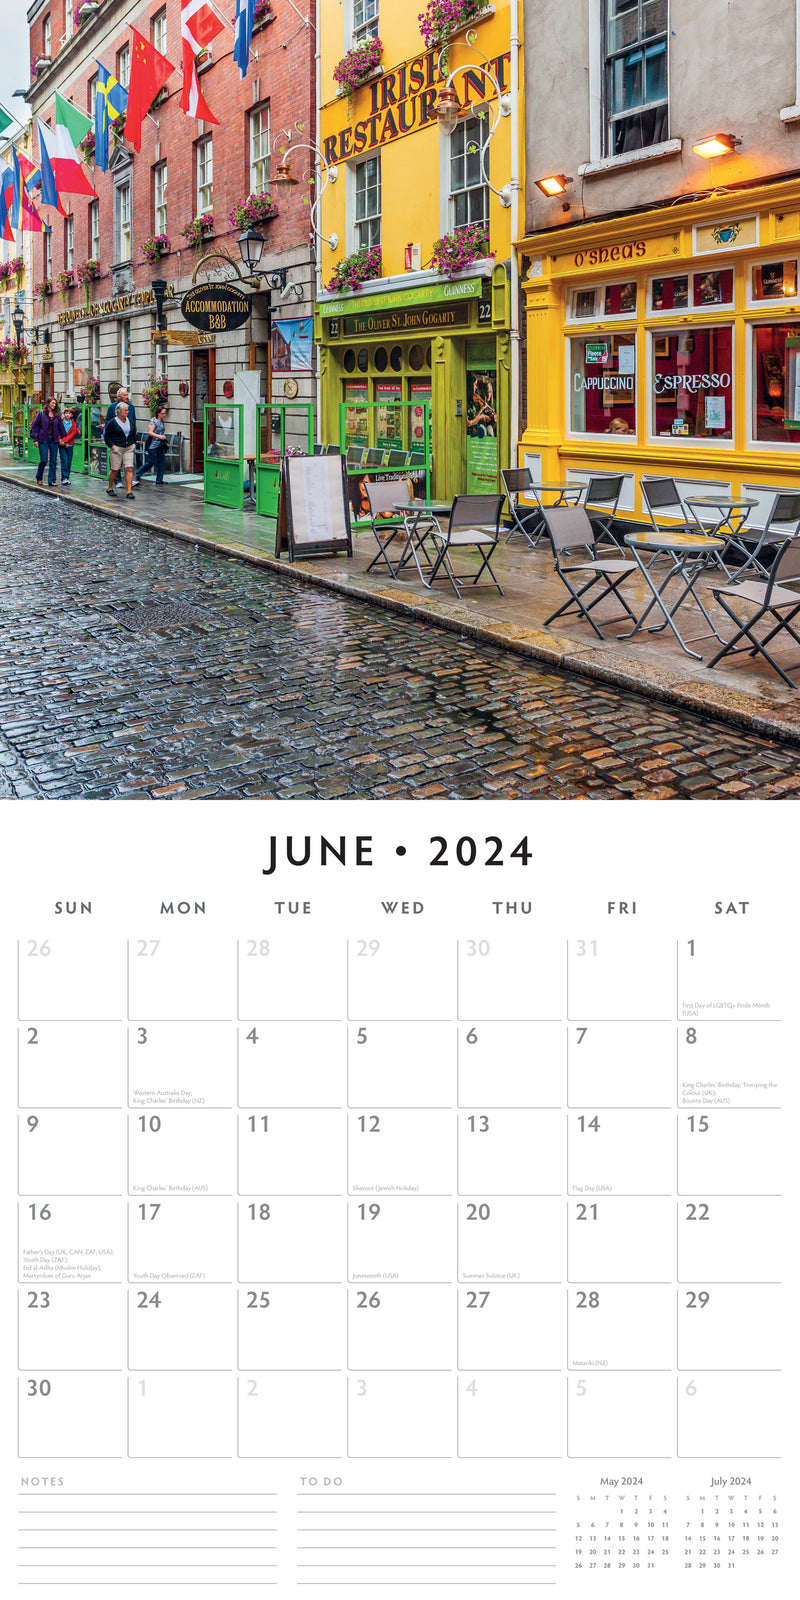 Dublin Pubs 2024 Square Wall Calendar